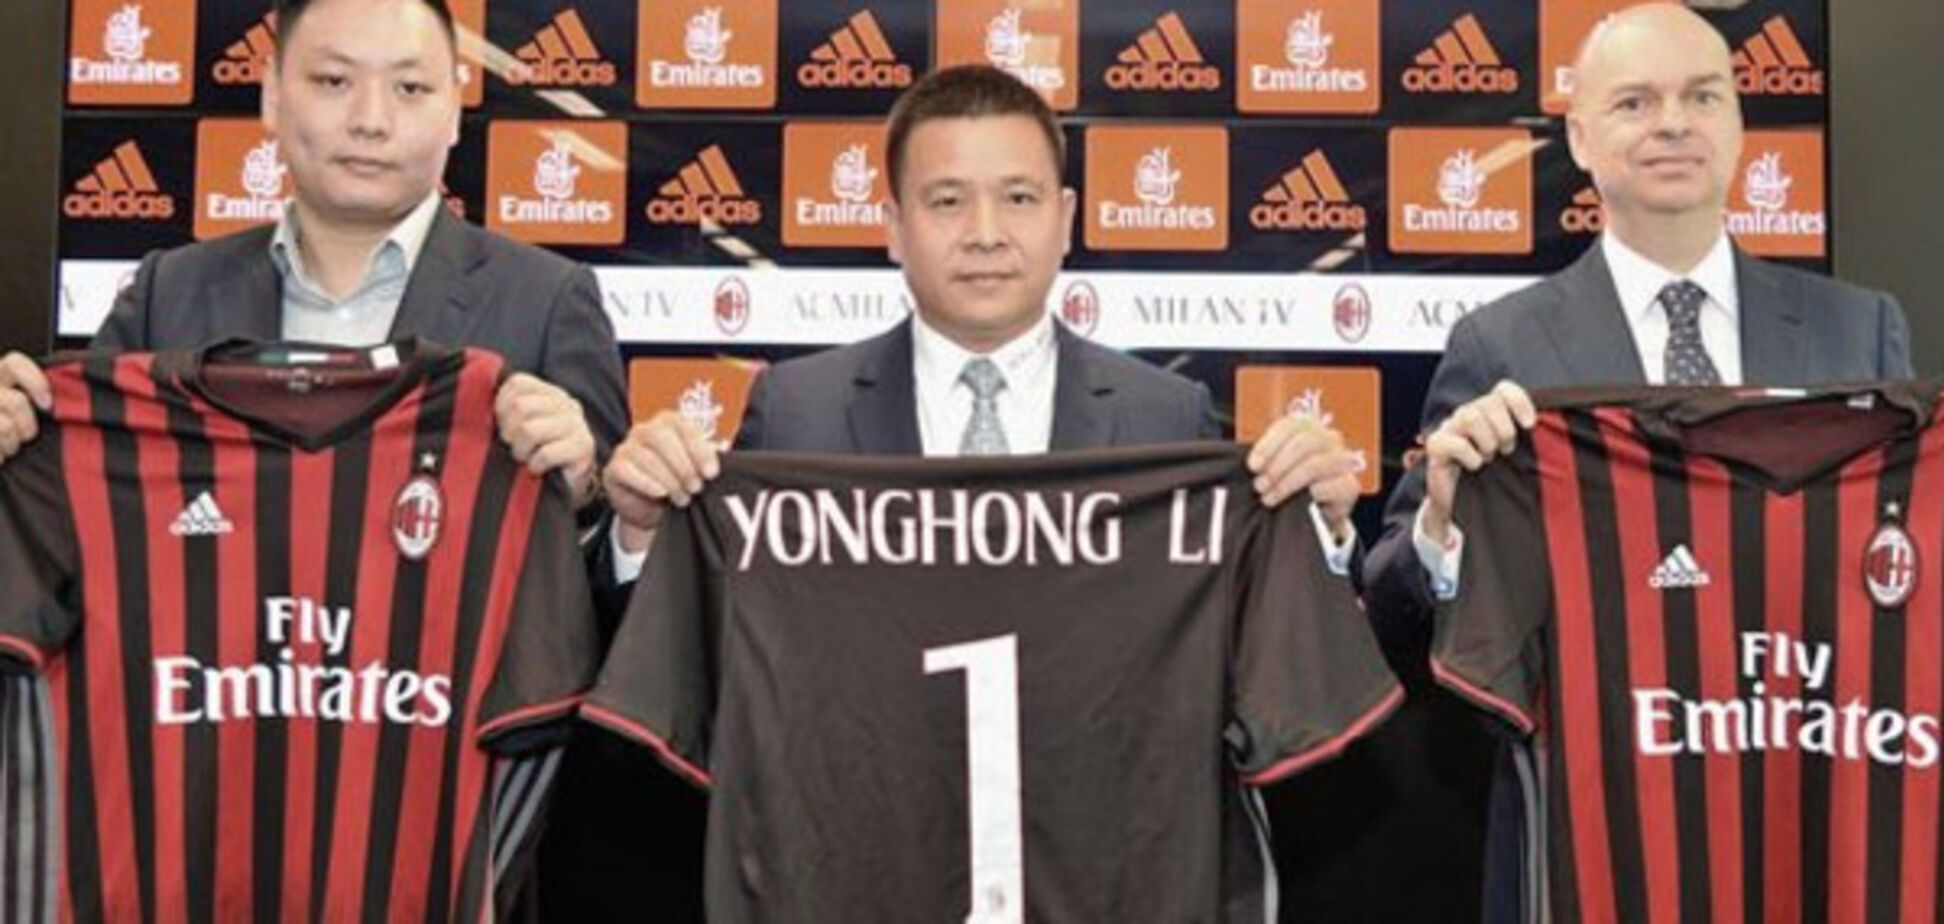 Китайцы рулят: сколько 'Милан' потратил с новым президентом клуба